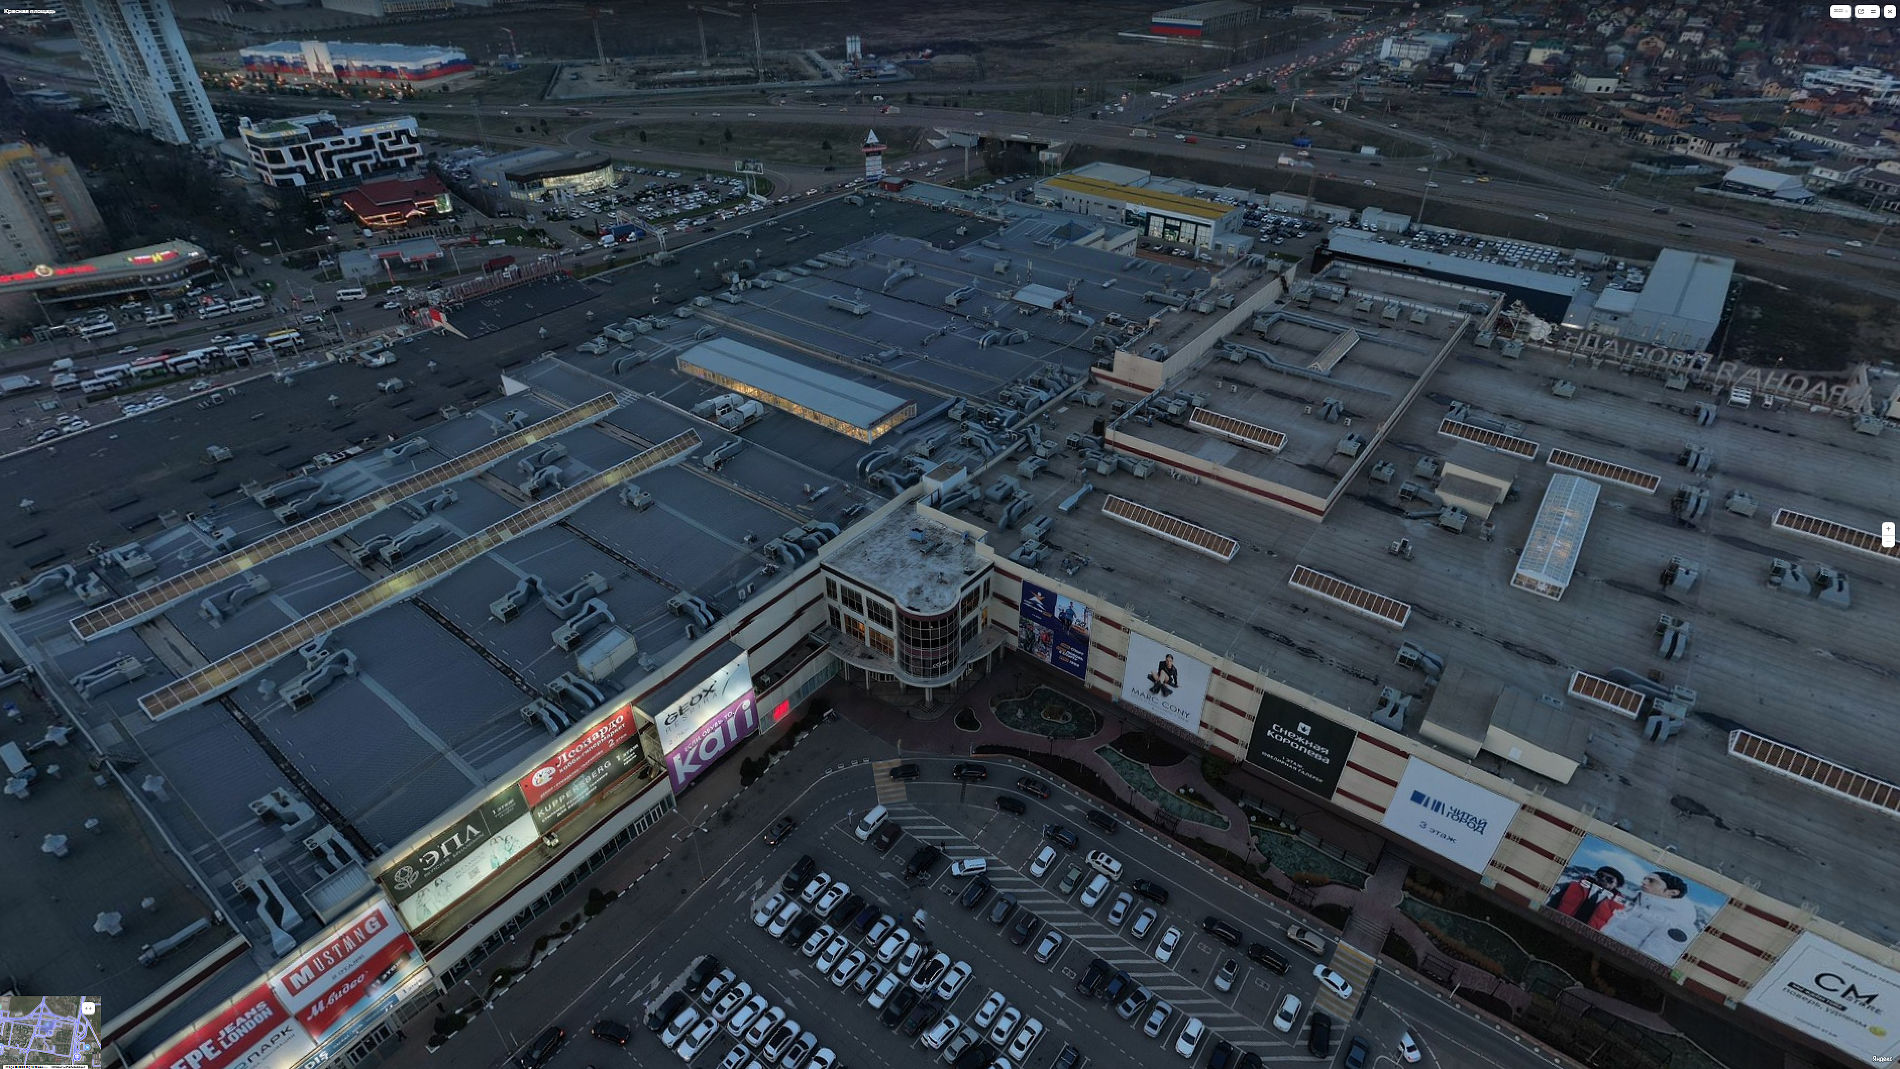 ТРЦ «Красная площадь» © Скриншот панорамы yandex.ru/maps 2022 года